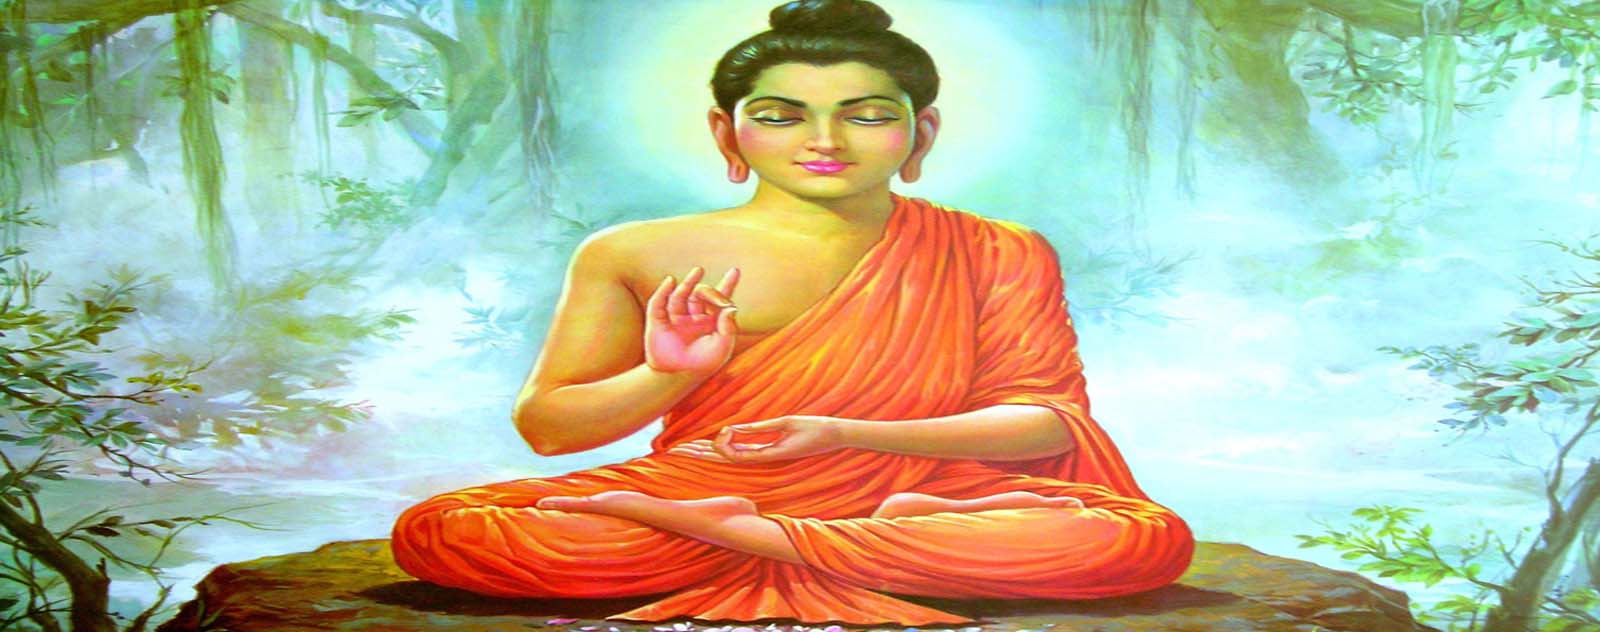 Le mythe du Bouddha historique